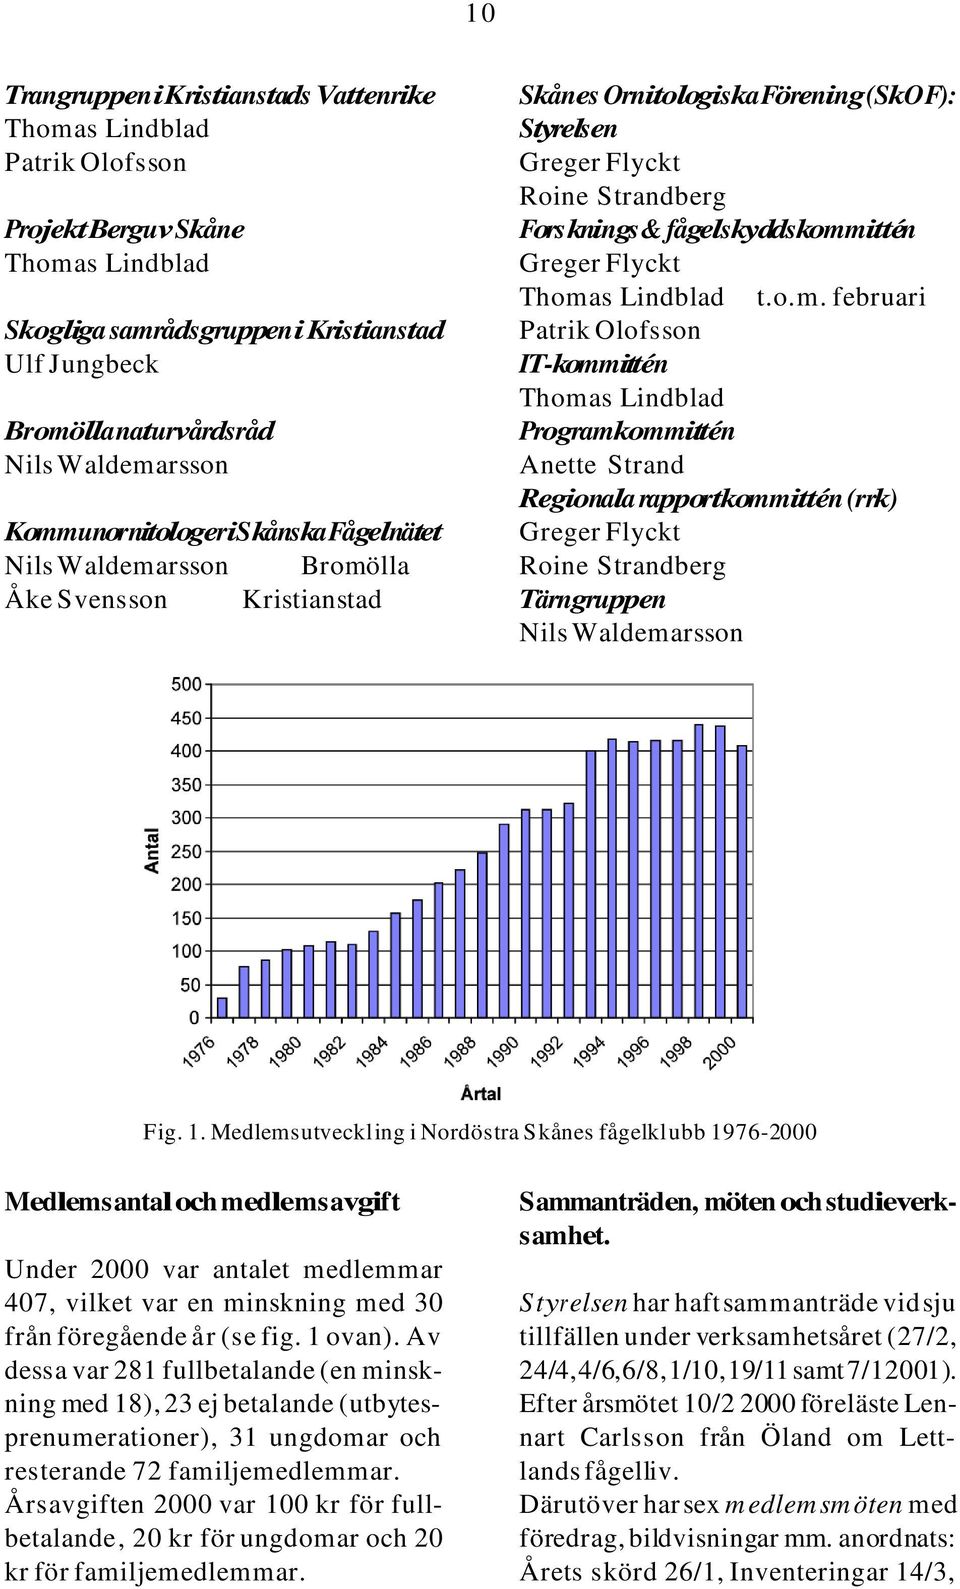 1. Medlemsutveckling i Nordöstra Skånes fågelklubb 1976-2000 Medlemsantal och medlemsavgift Under 2000 var antalet medlemmar 407, vilket var en minskning med 30 från föregående år (se fig. 1 ovan).